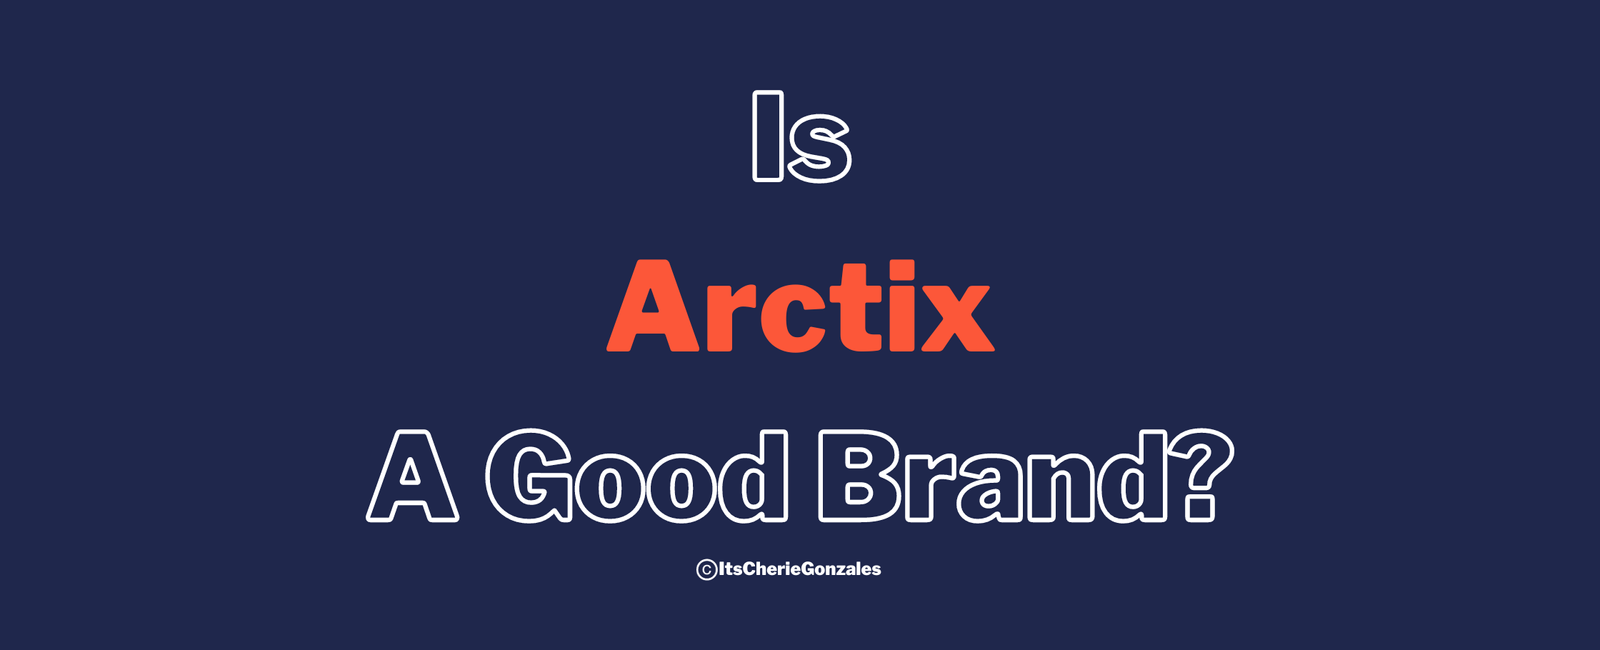 Is Arctix a good brand banner